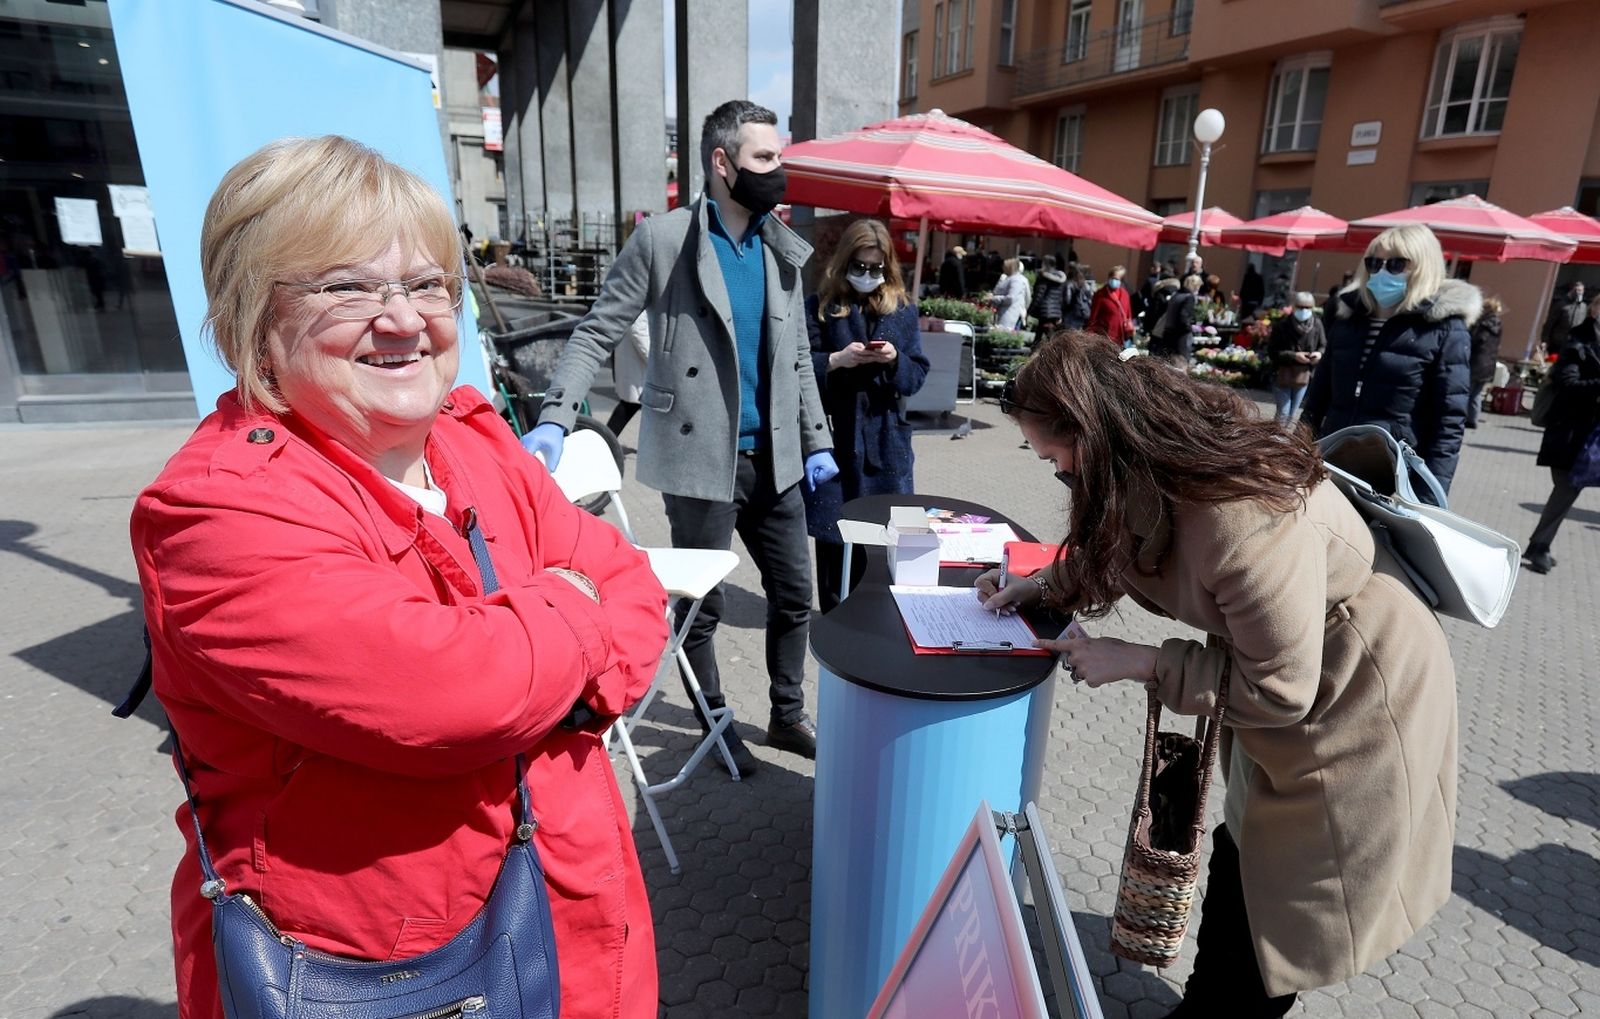 16.04.2021., Zagreb - Anka Mrak Taritas pocela je danas na Trgu bana Jalacica prikupljanje potpisa za kandidaturu na lokalnim izborima.
Photo: Patrik Macek/PIXSELL